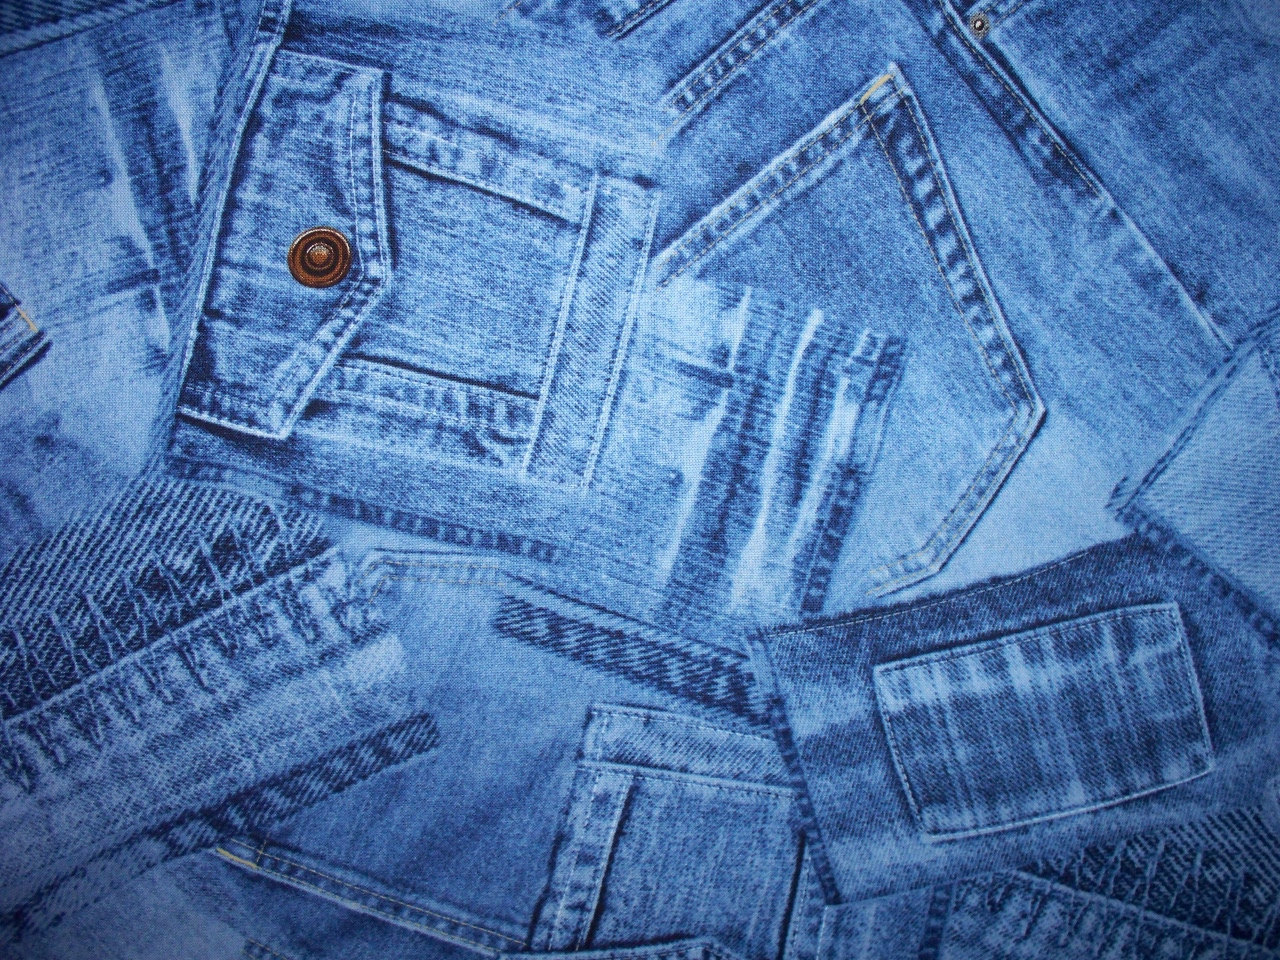 jeans tapete,denim,kleidung,blau,tasche,textil 